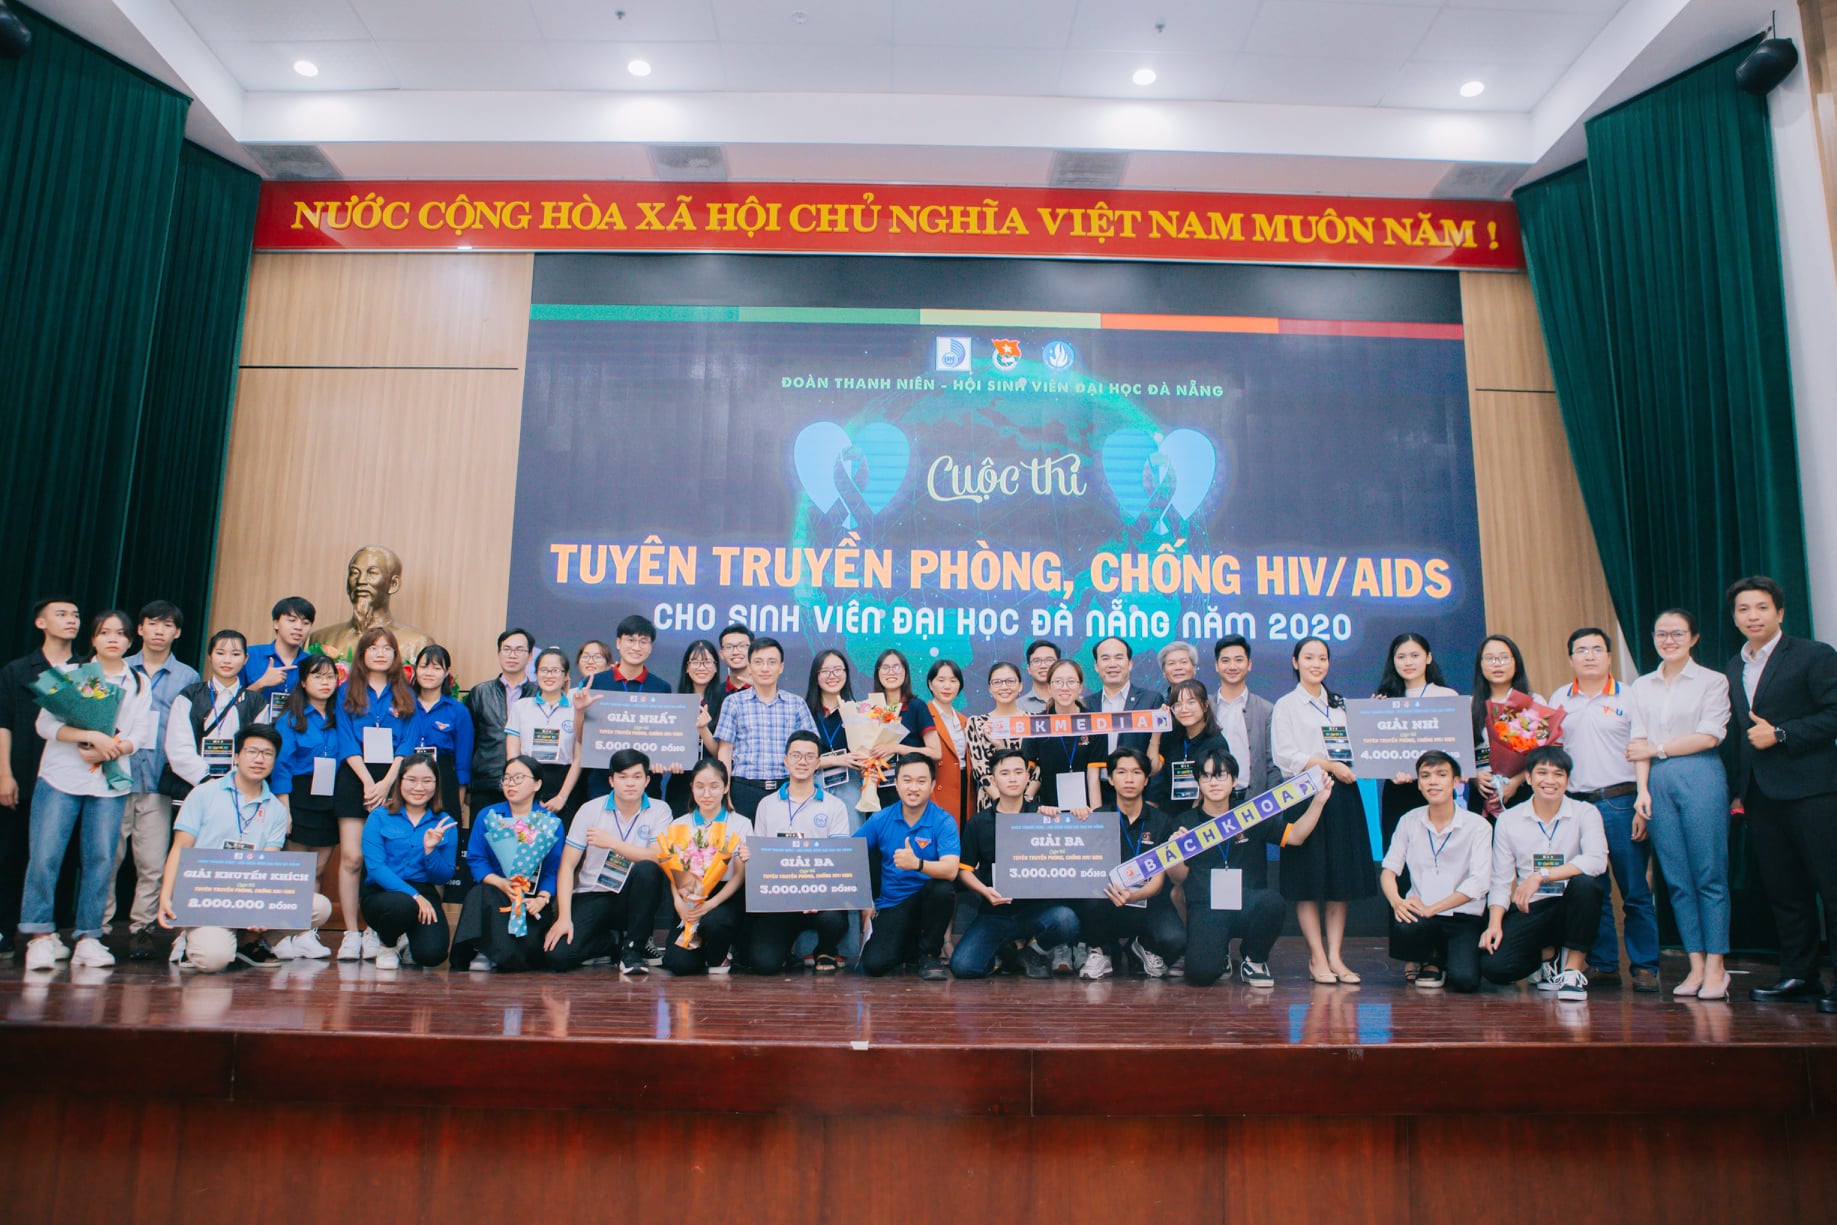 Đoàn trường Đại học Sư phạm Kỹ thuật đạt Giải Ba cuộc thi “Tìm hiểu công tác phòng, chống HIV/AIDS"